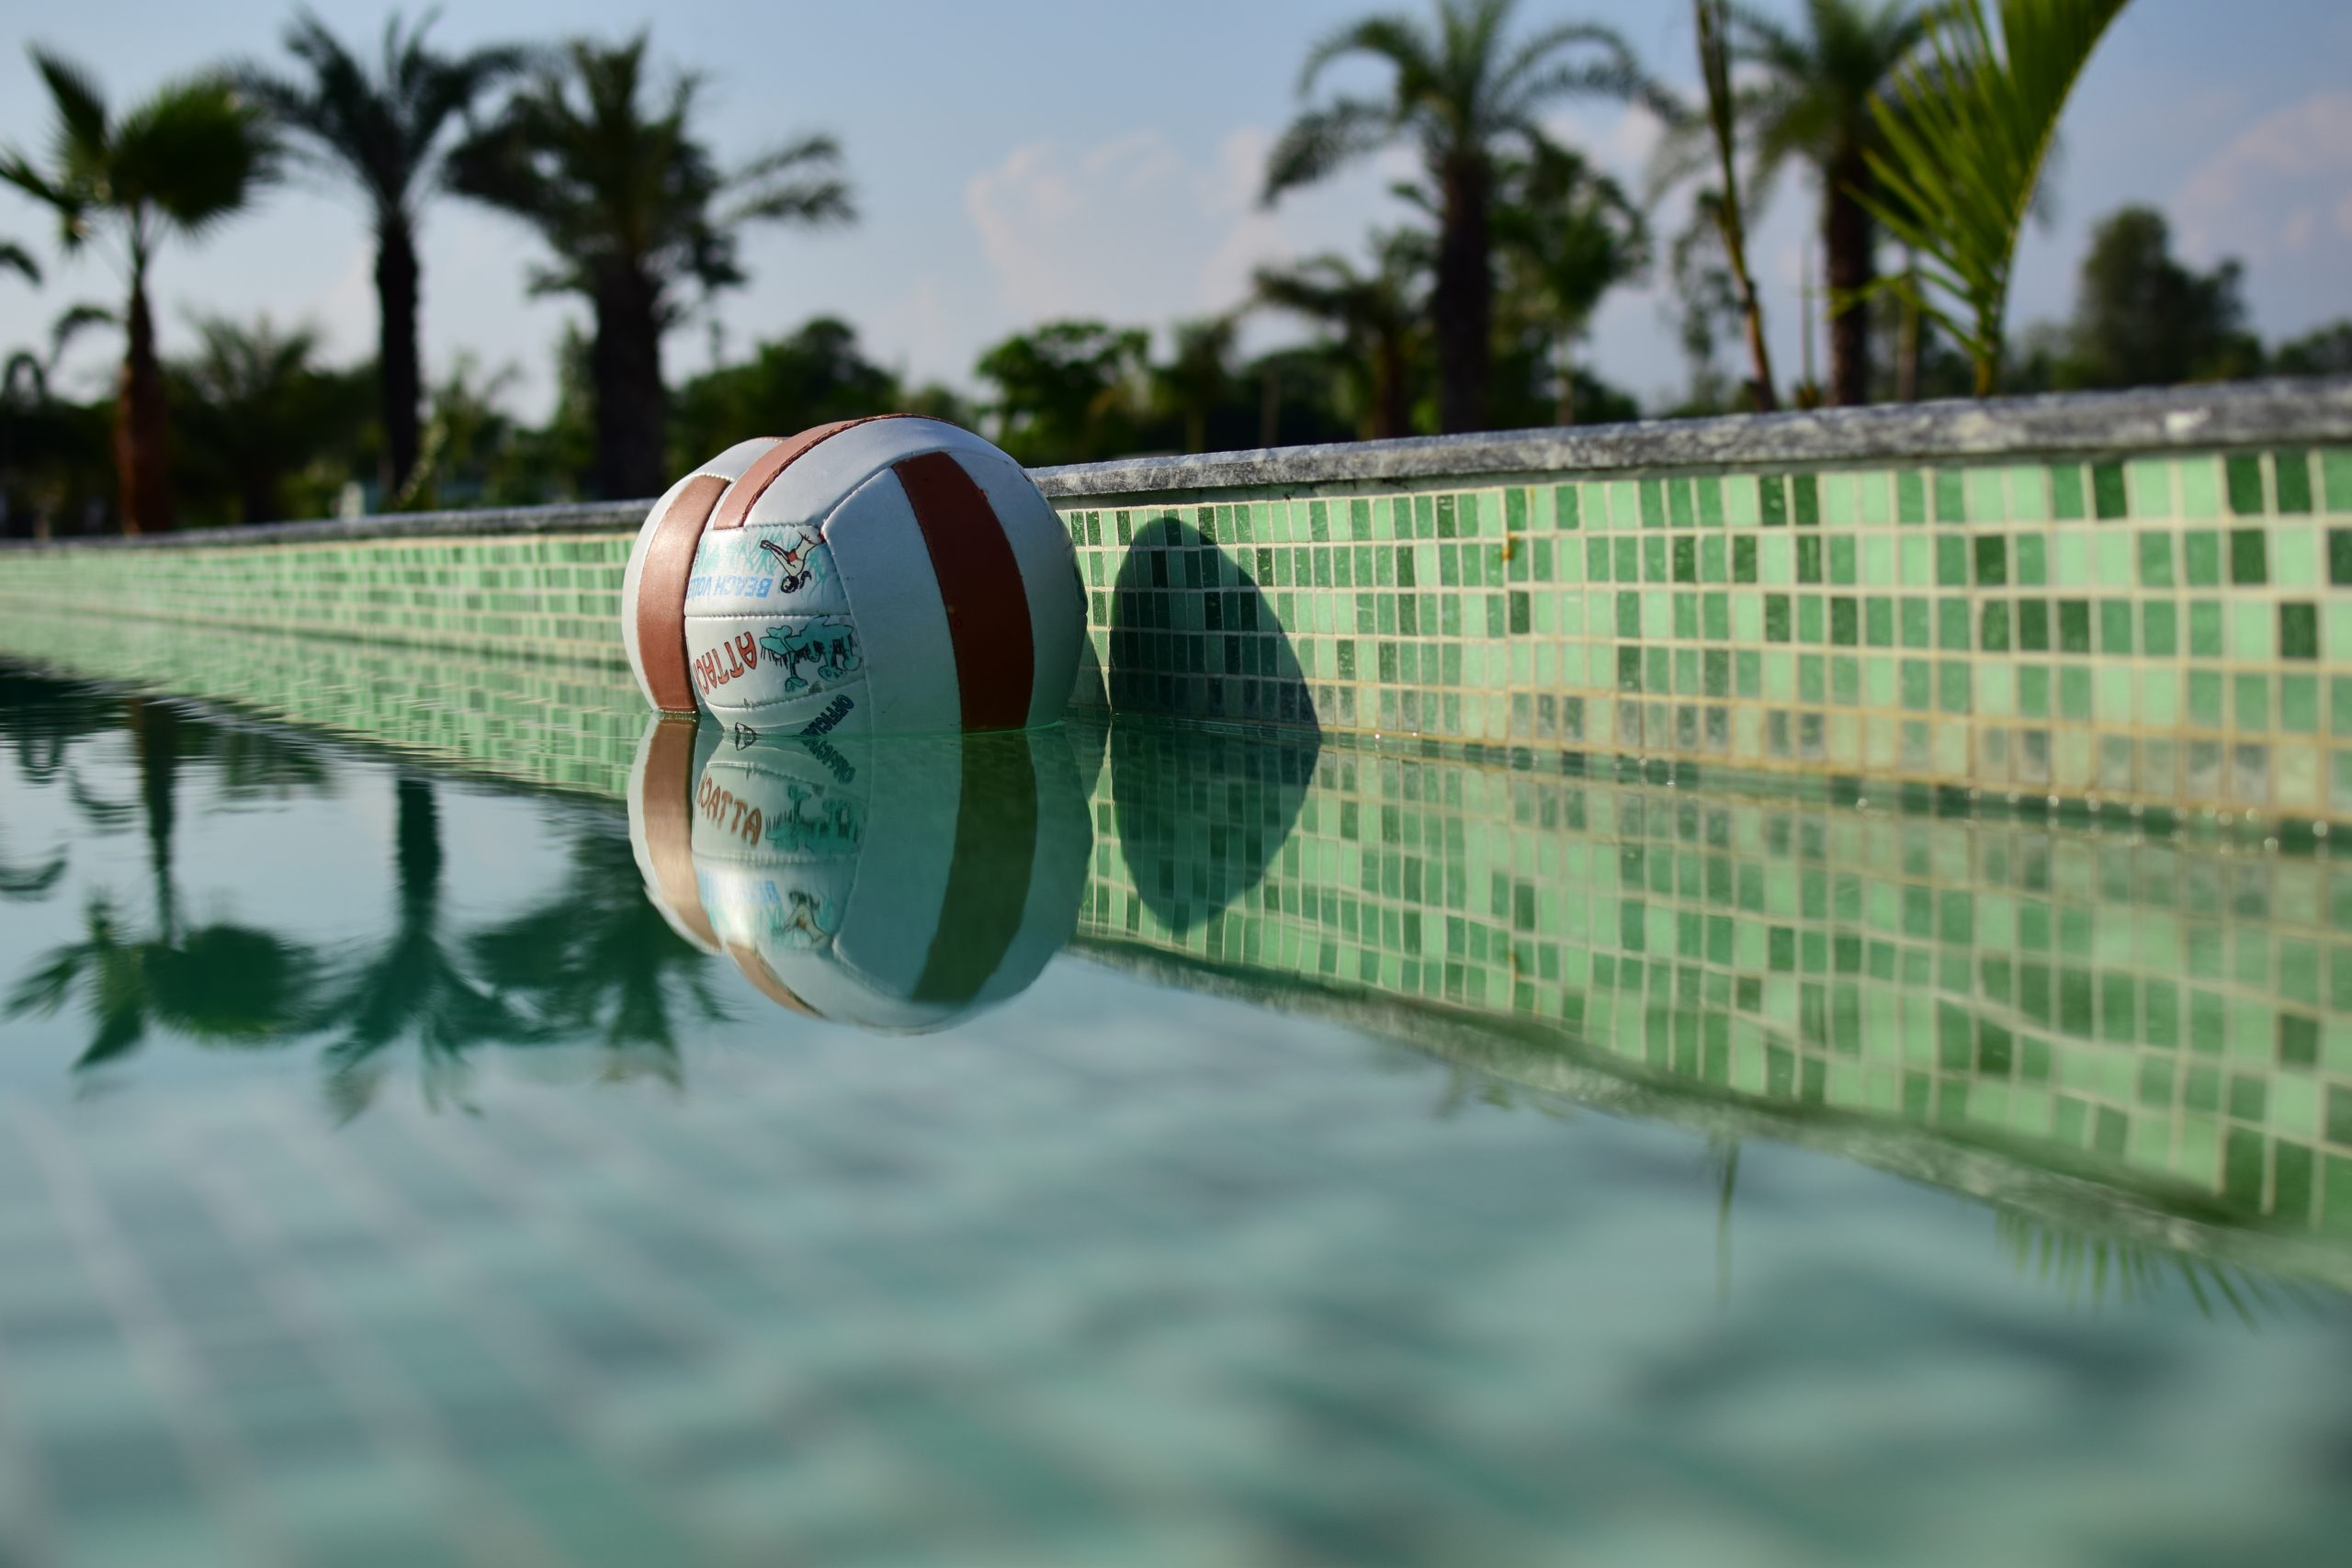 Ball in swimming pool